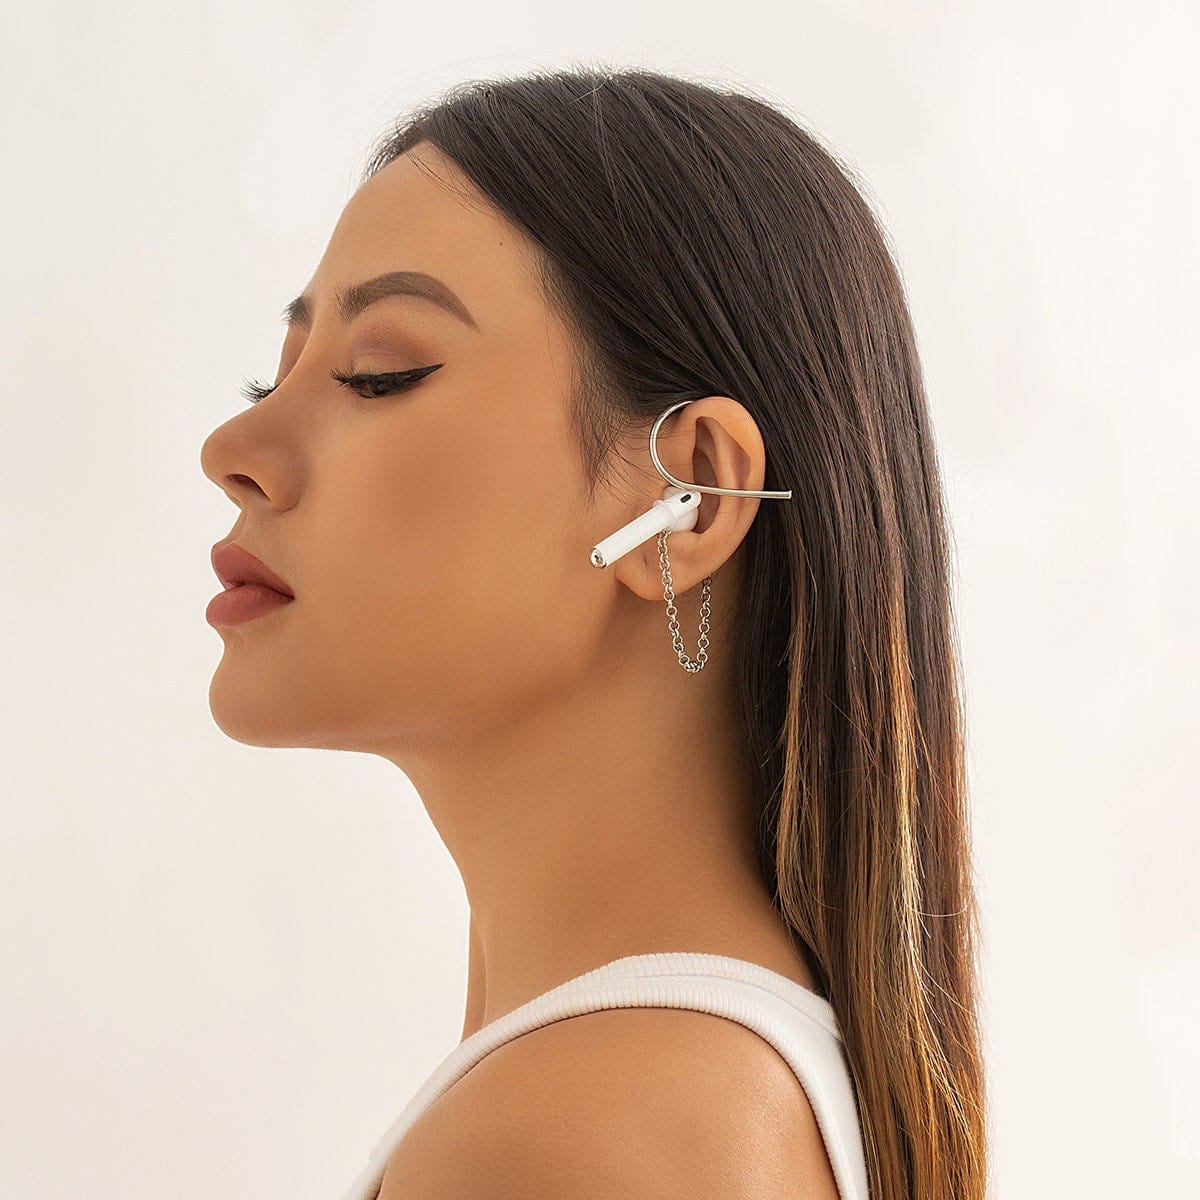 Chic Anti-lost Wireless AirPods Earphone Ear Wrap Chain Earrings